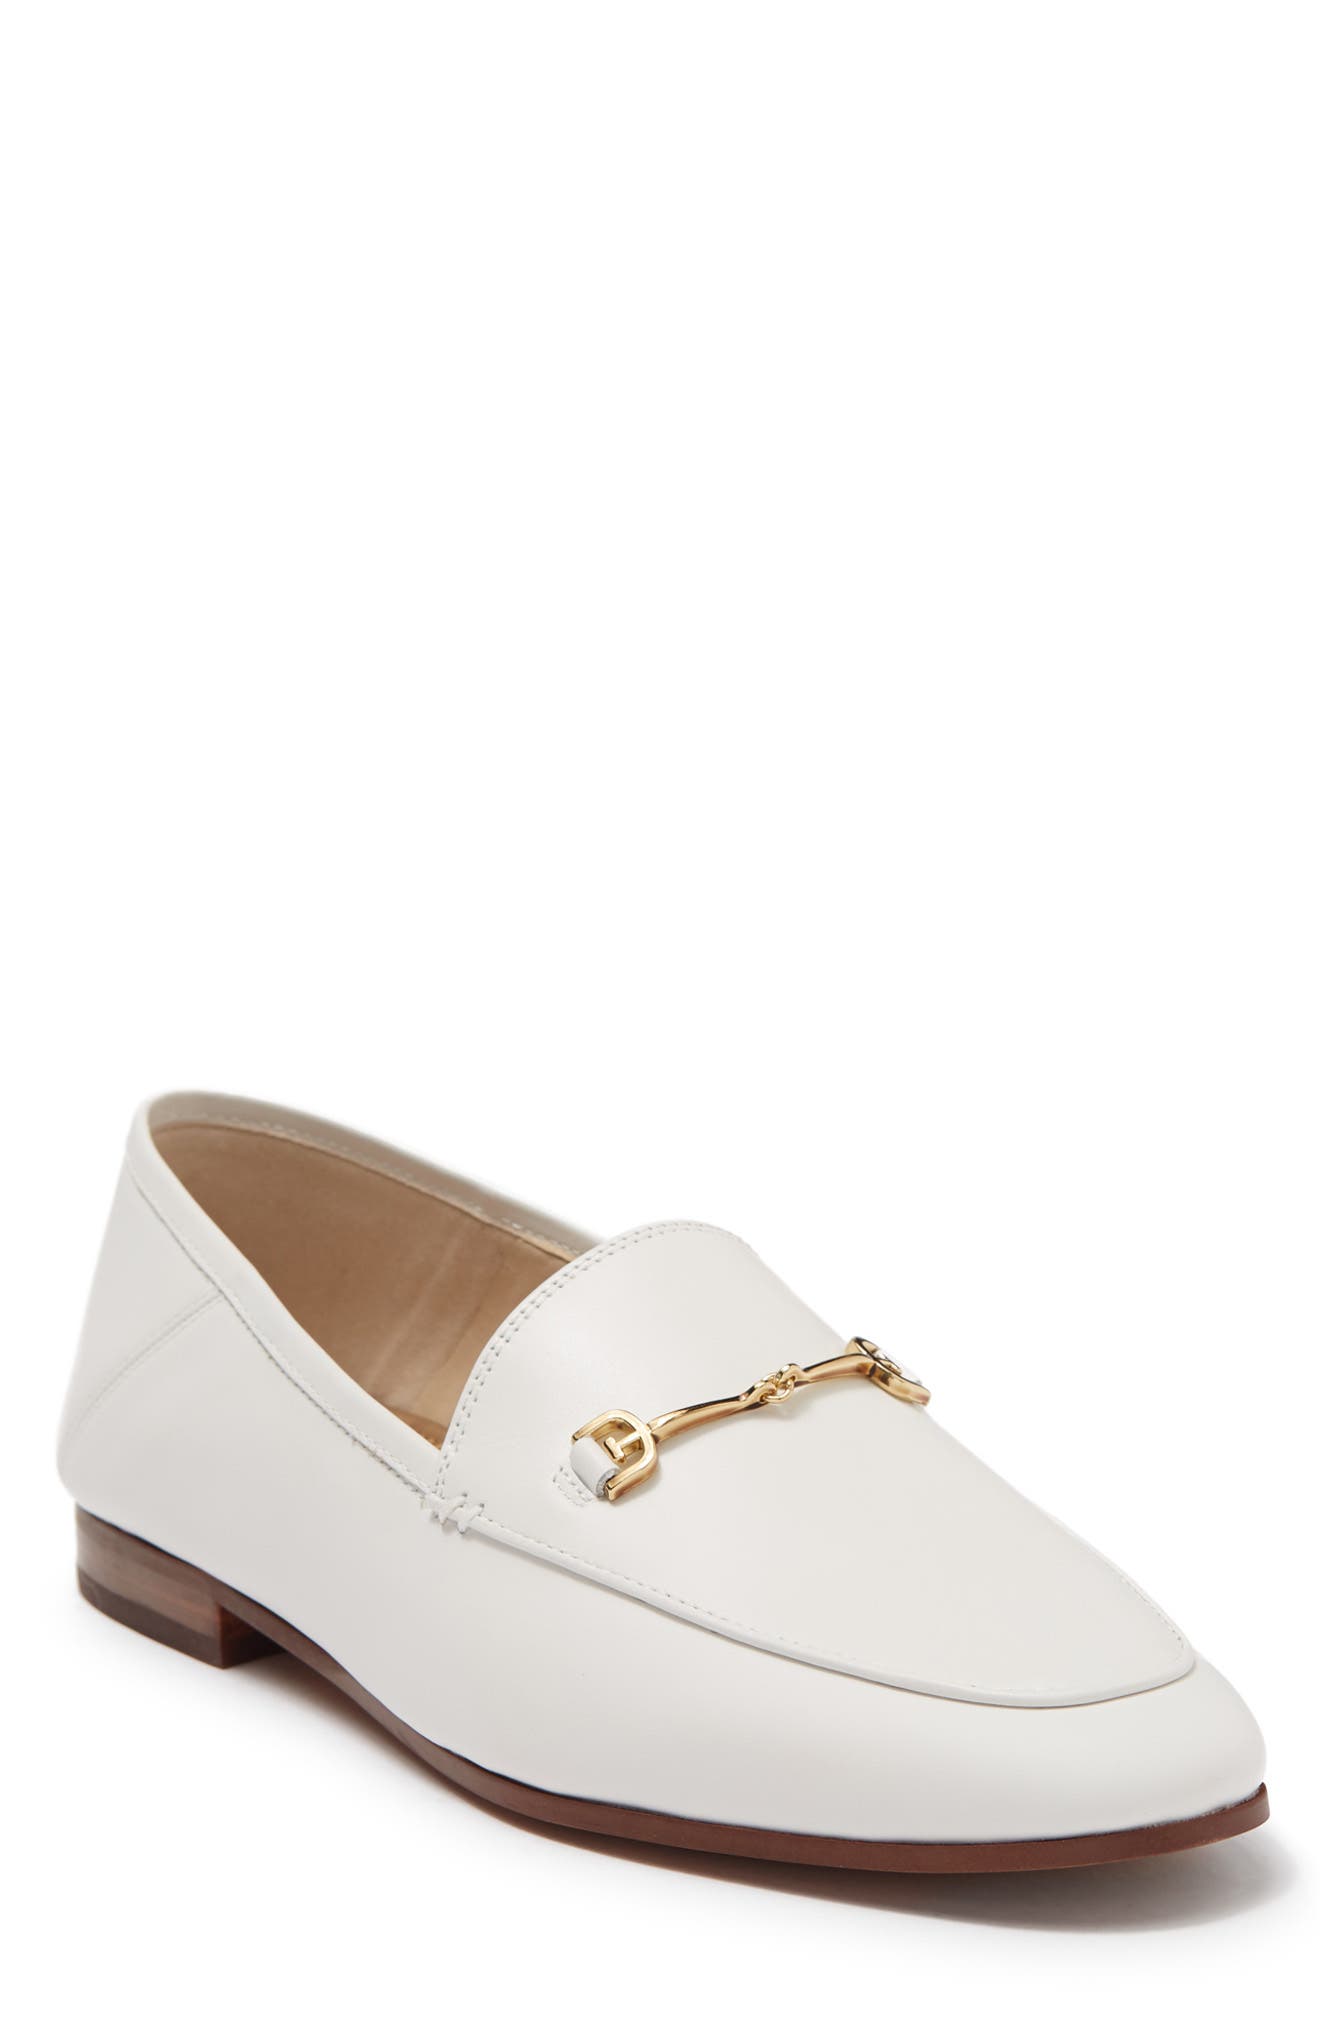 white dress shoes women